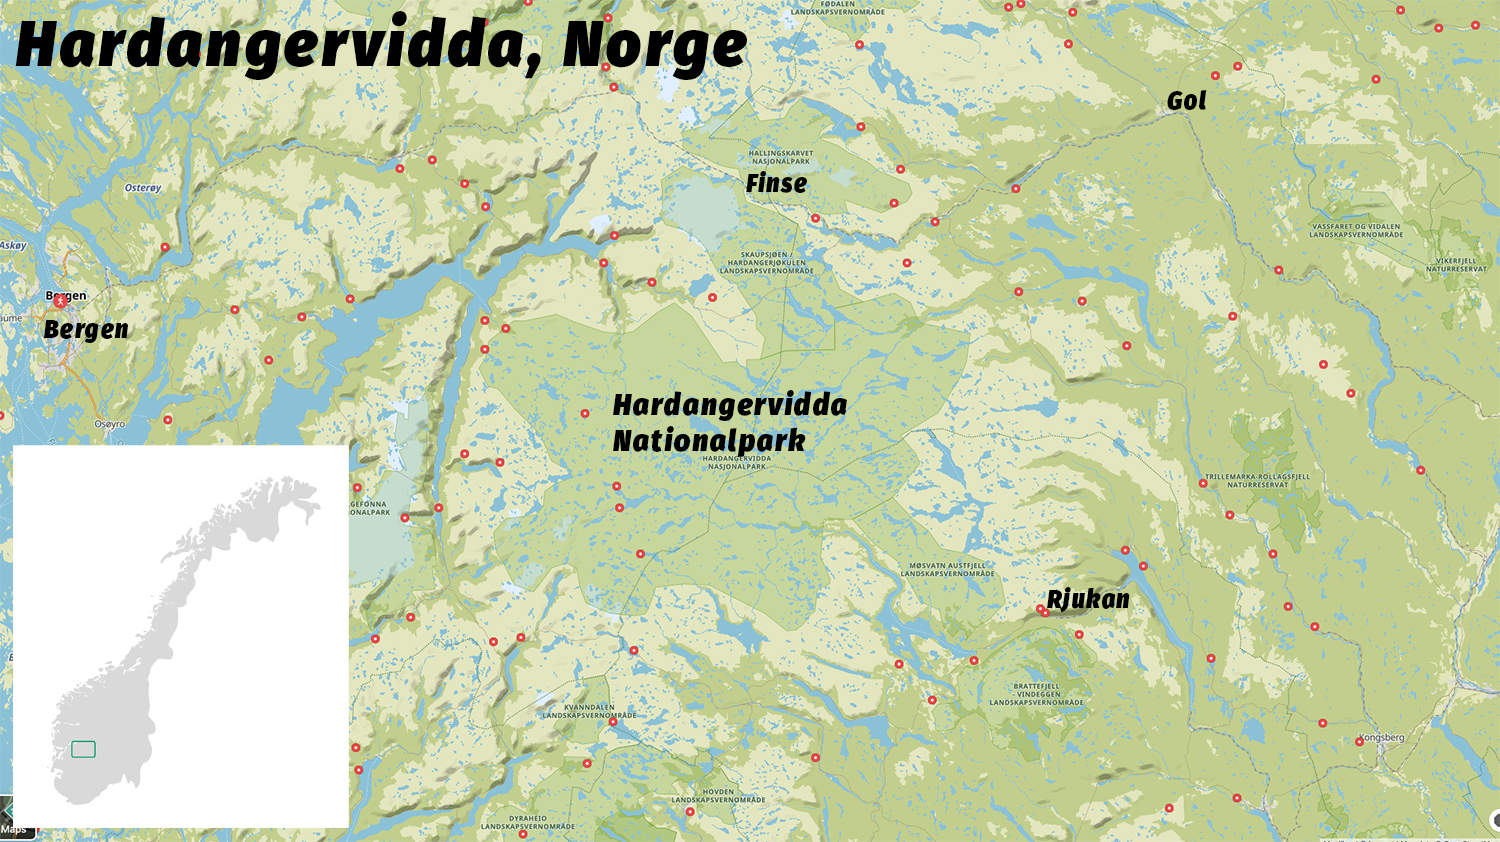 Hardangervidda, Norge, oversigtskort af Erik B. Jørgensen